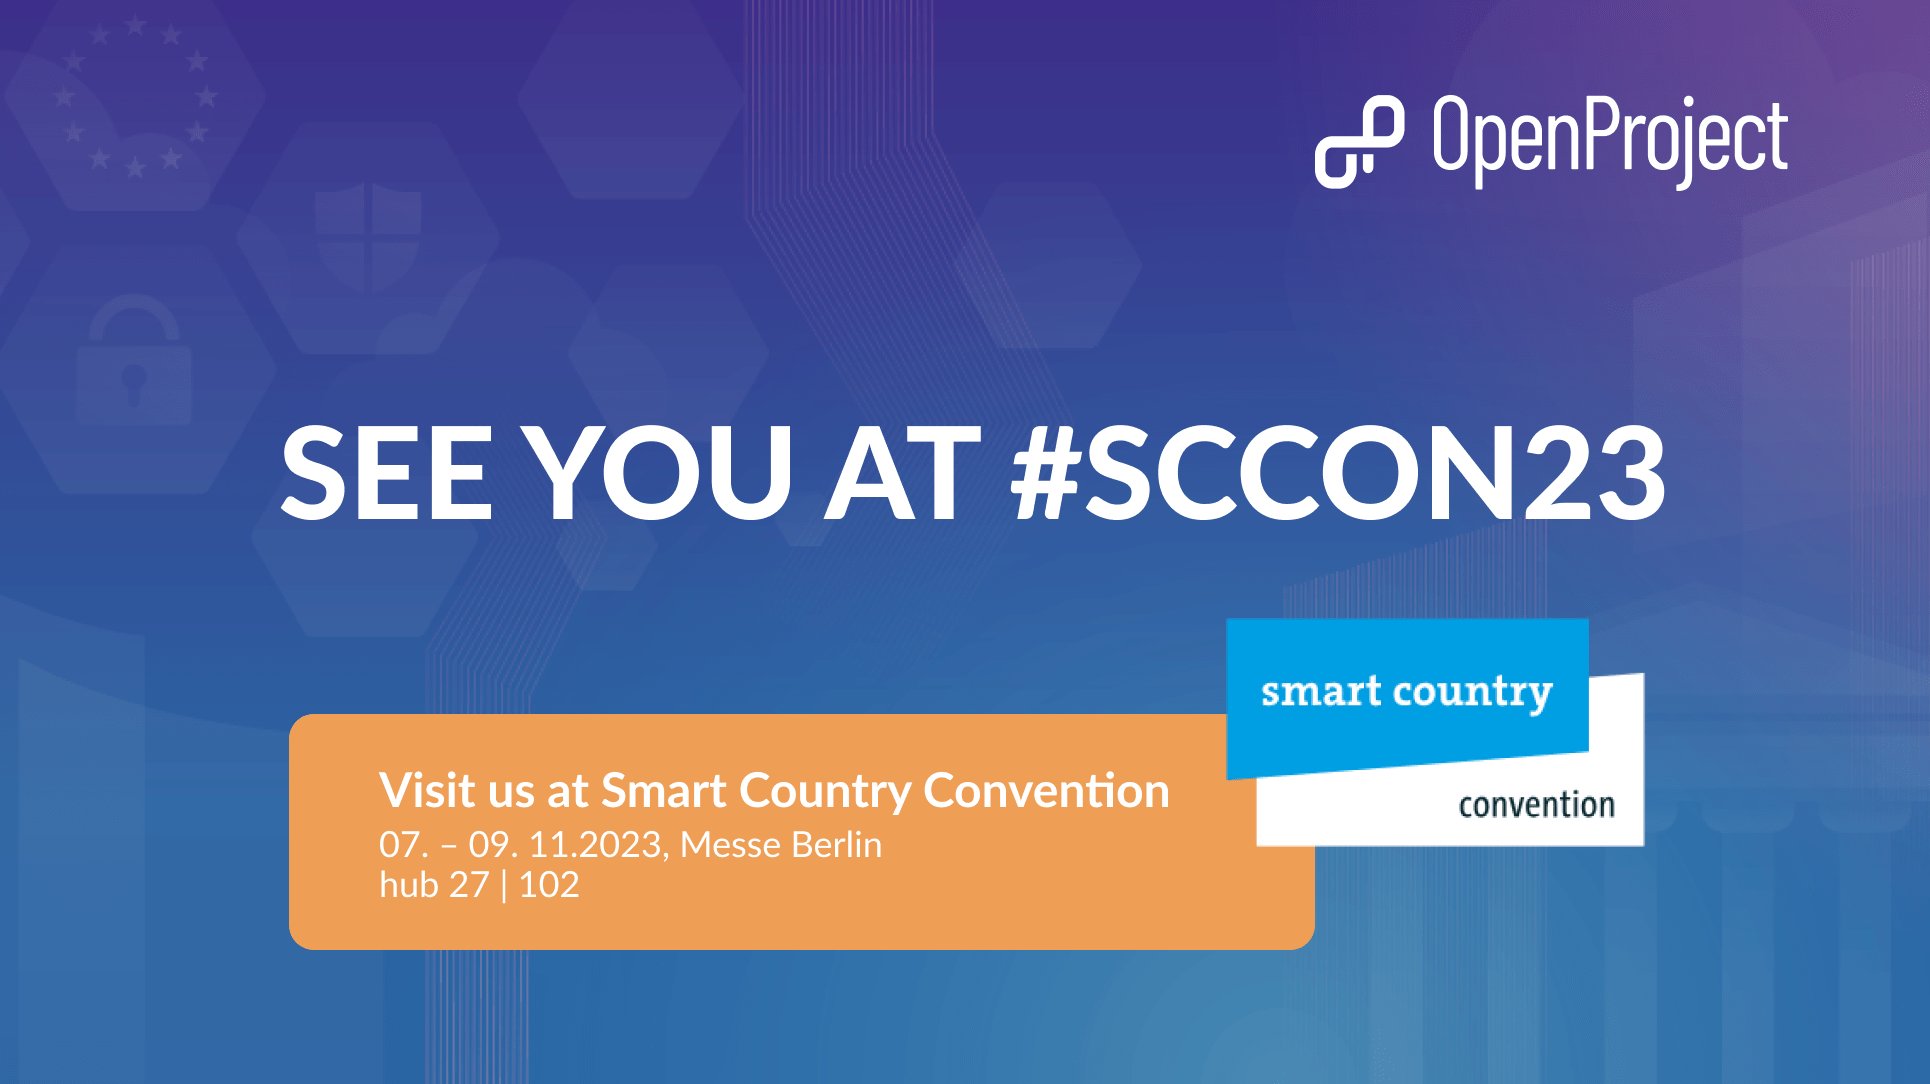 Treffen Sie uns in Berlin auf der Smart Country Convention 2023